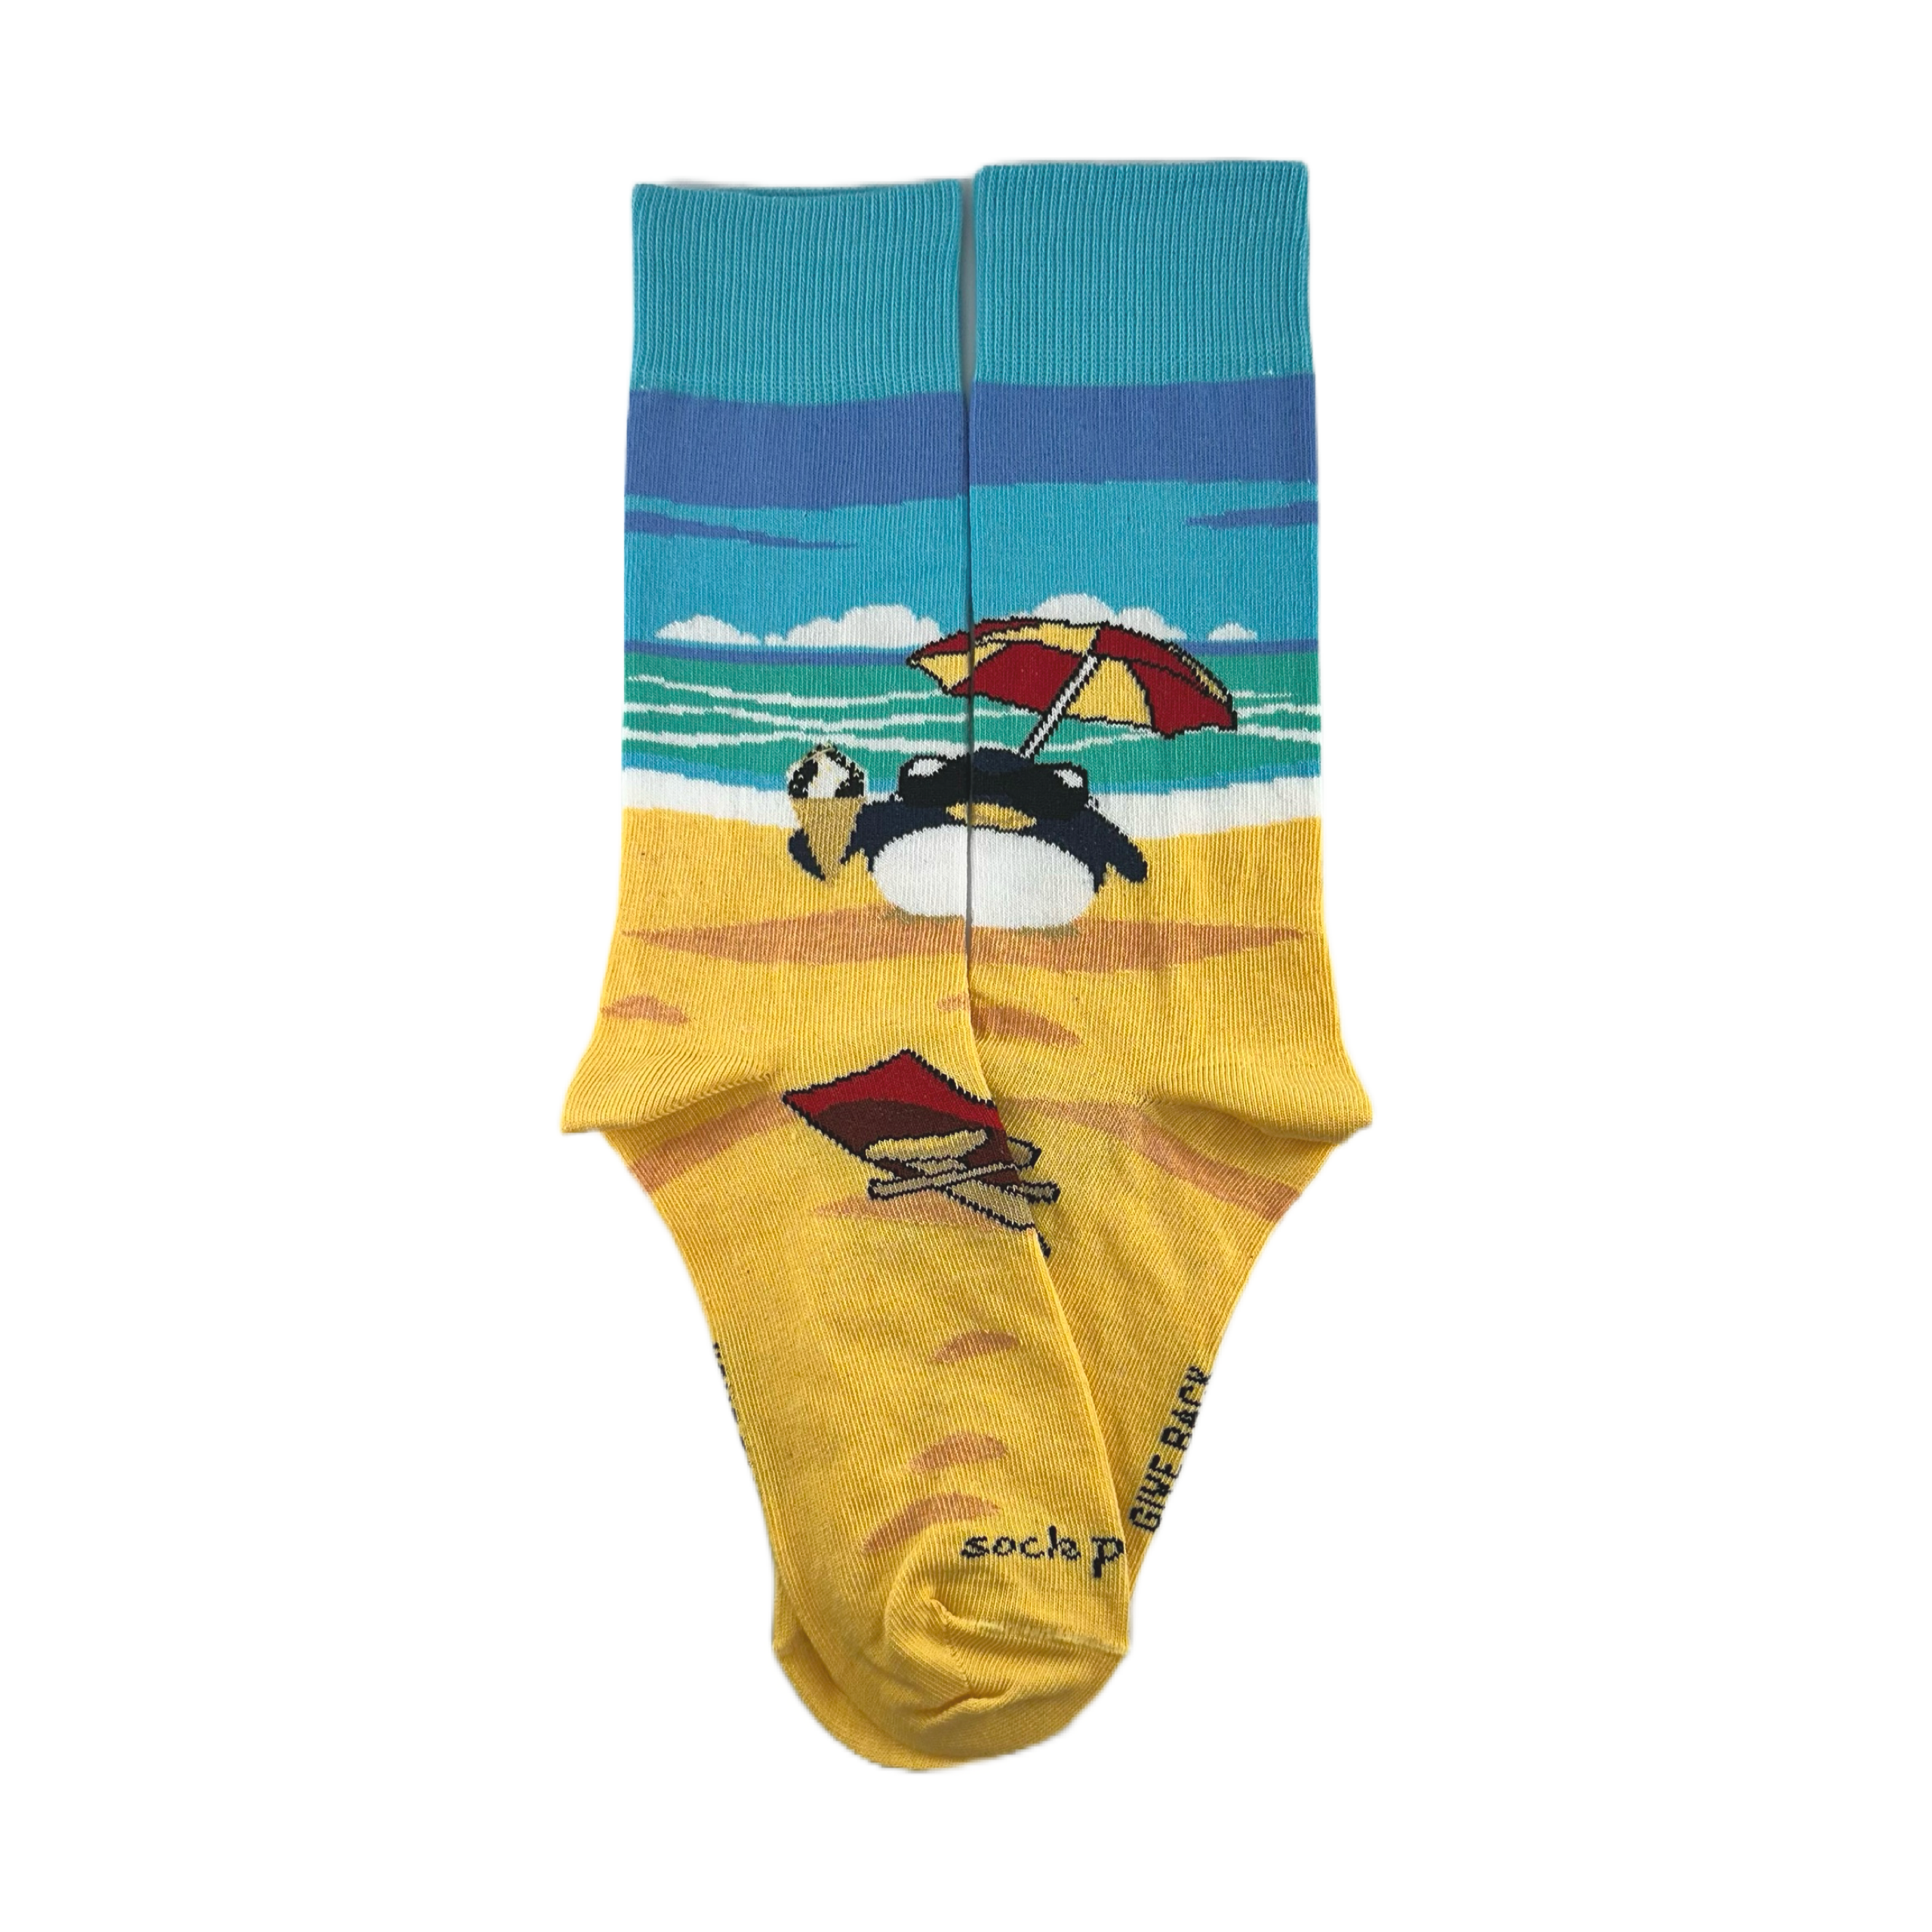 Beach Penguin Socks from the Sock Panda (Adult Medium)